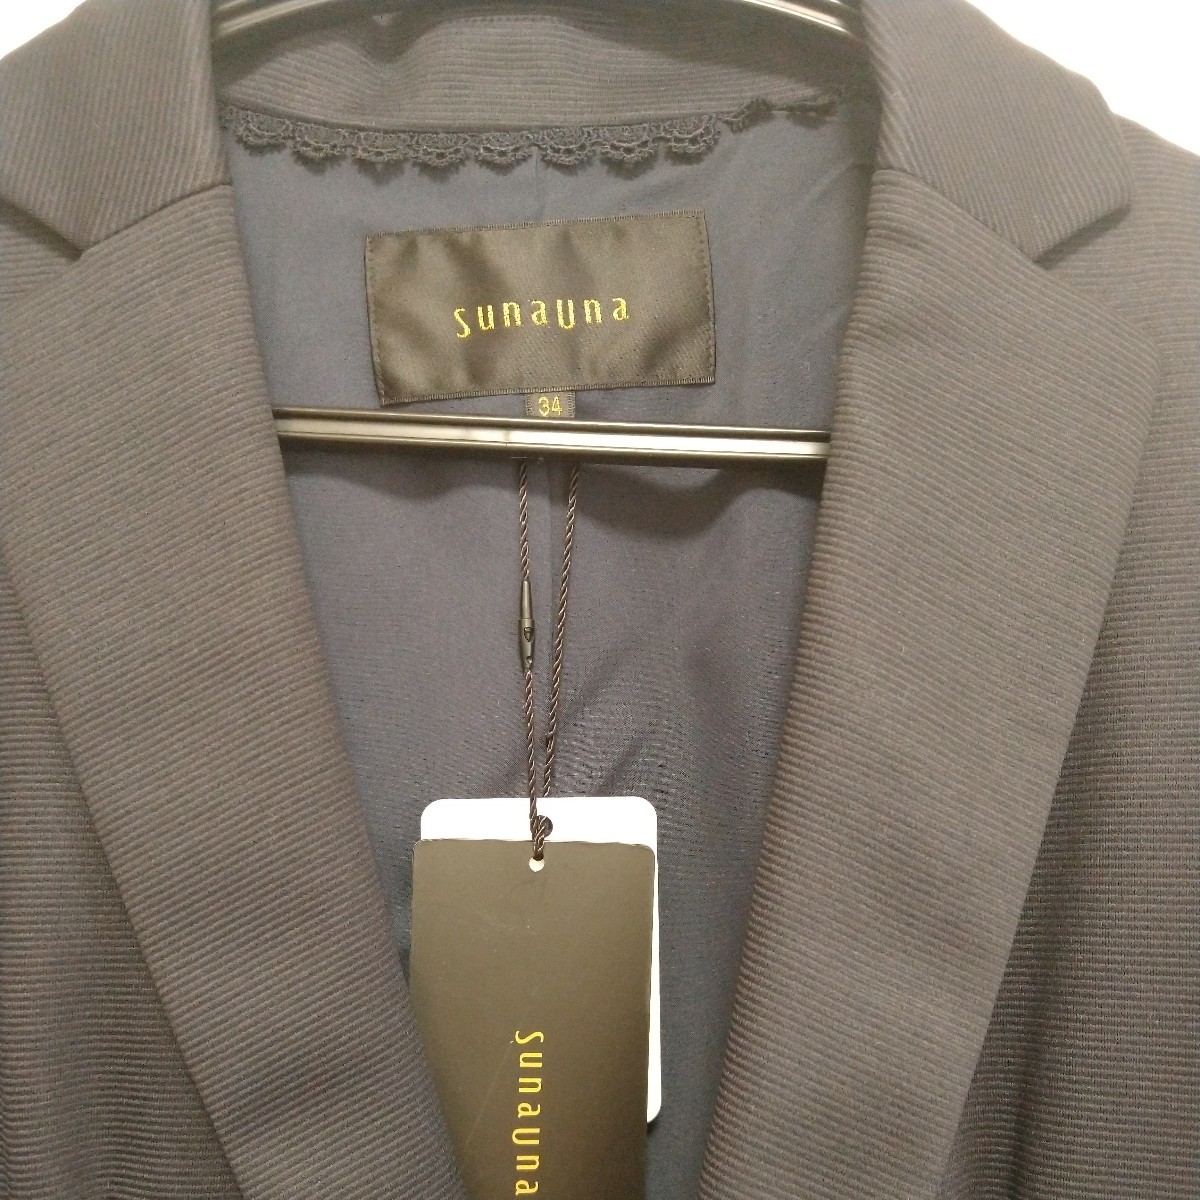 Sunauna テーラードジャケット 34 紺 タグ付き未着用 スーナウーナ 通年 オフィス フォーマル ネイビー 小さいサイズ 小柄_画像2